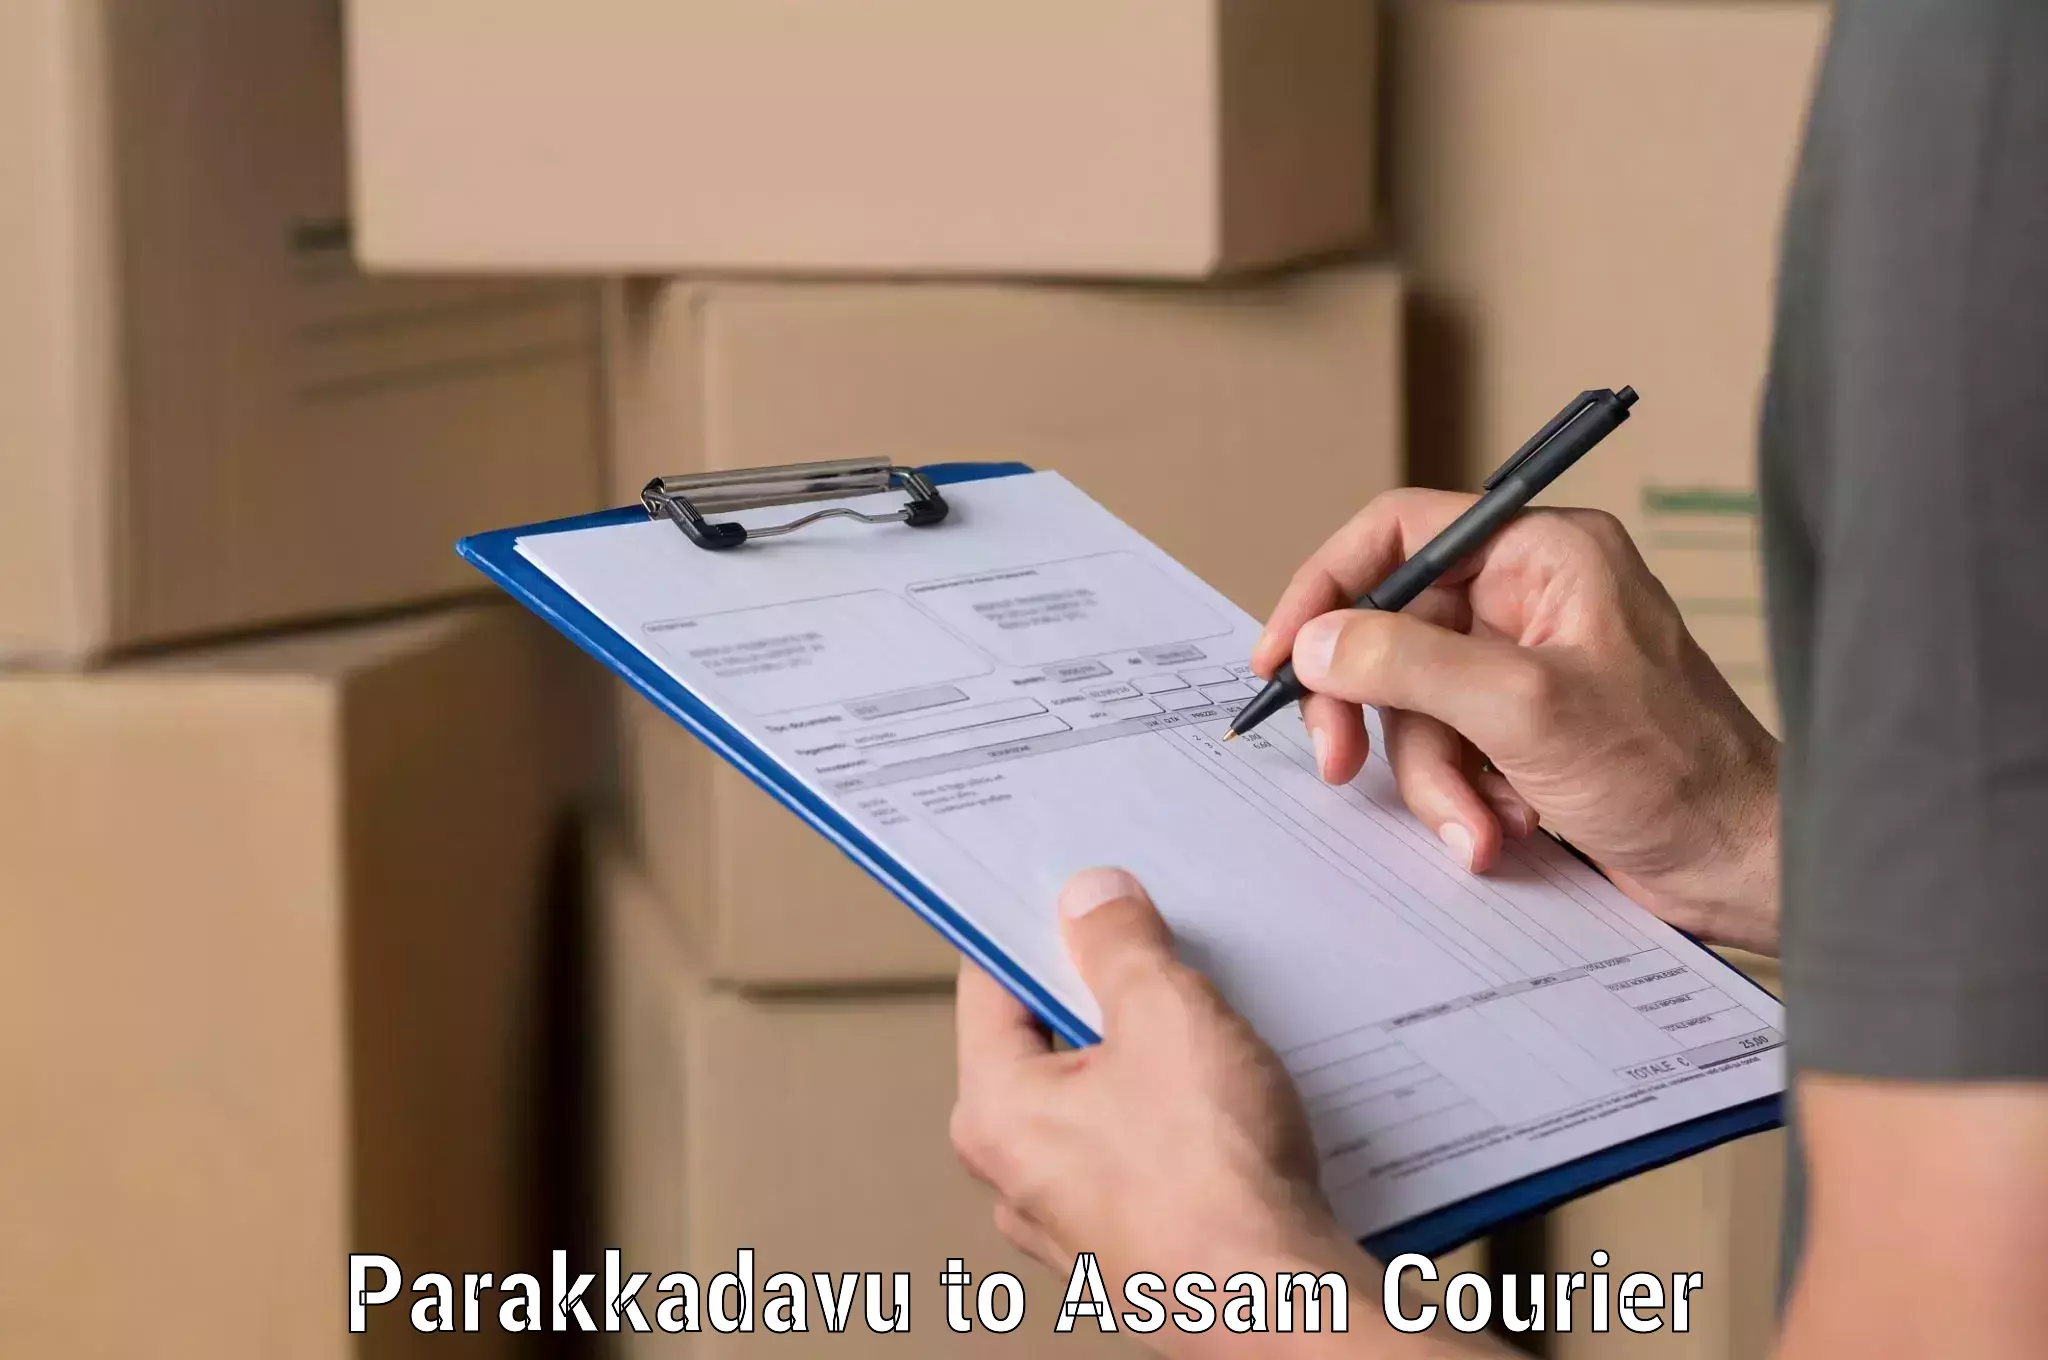 Residential courier service Parakkadavu to Hajo